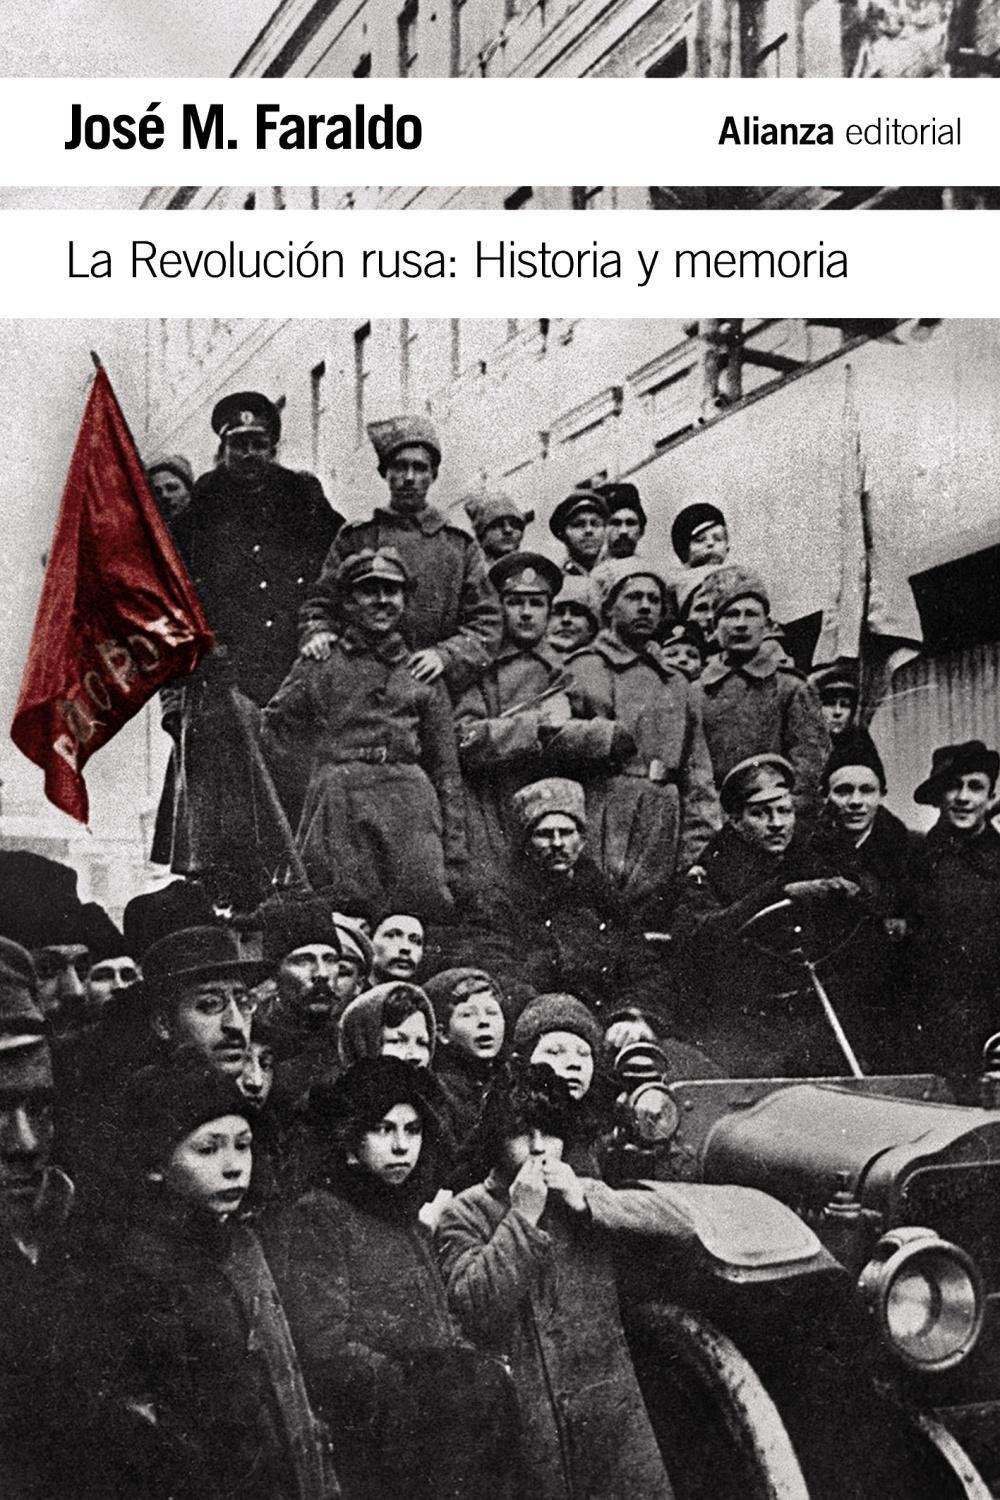 La Revolución rusa "Historia y memoria"